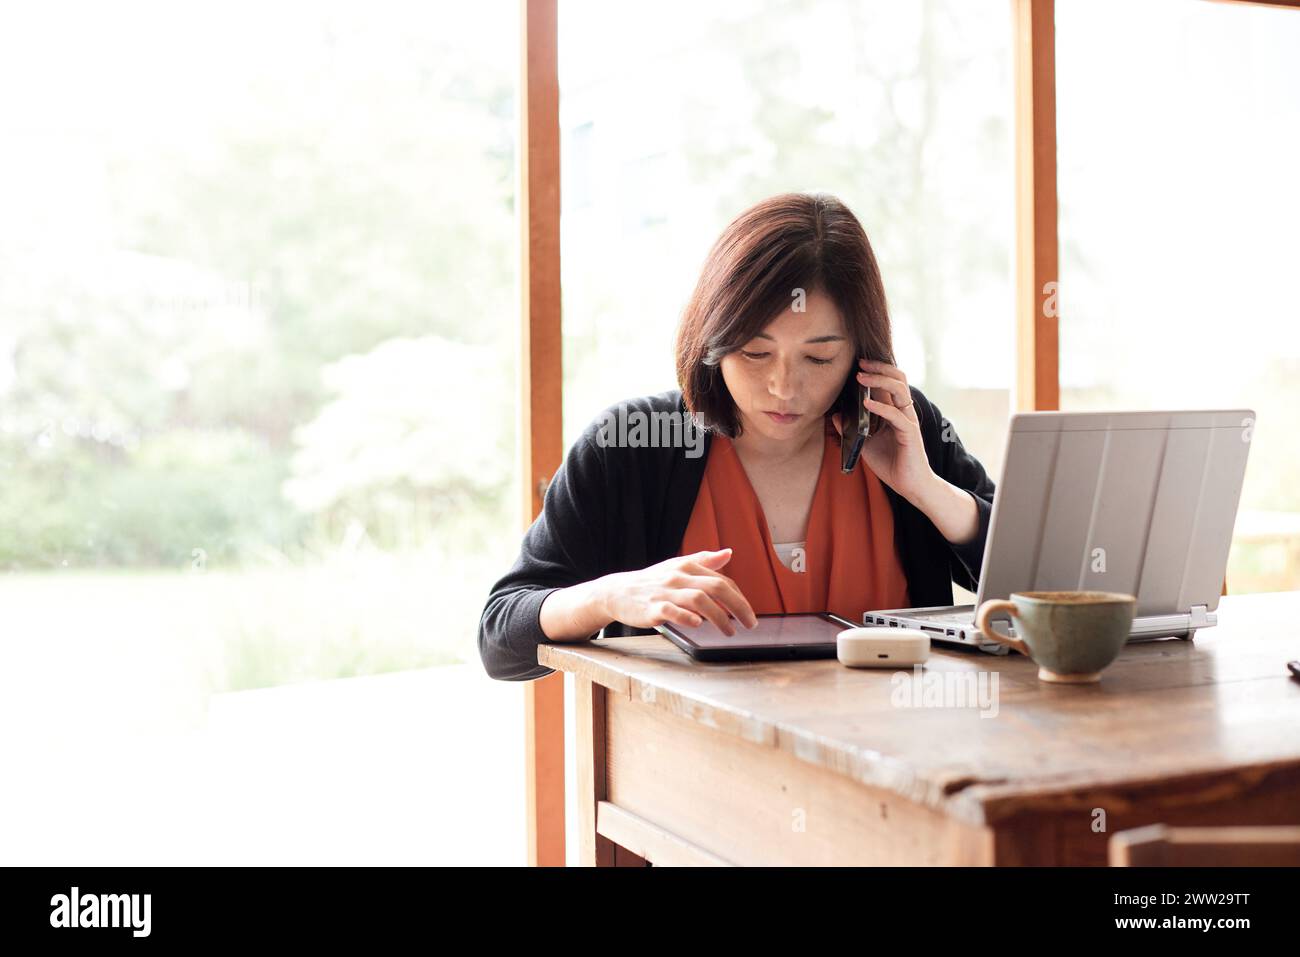 Une femme assise à une table avec un ordinateur portable et un téléphone Banque D'Images